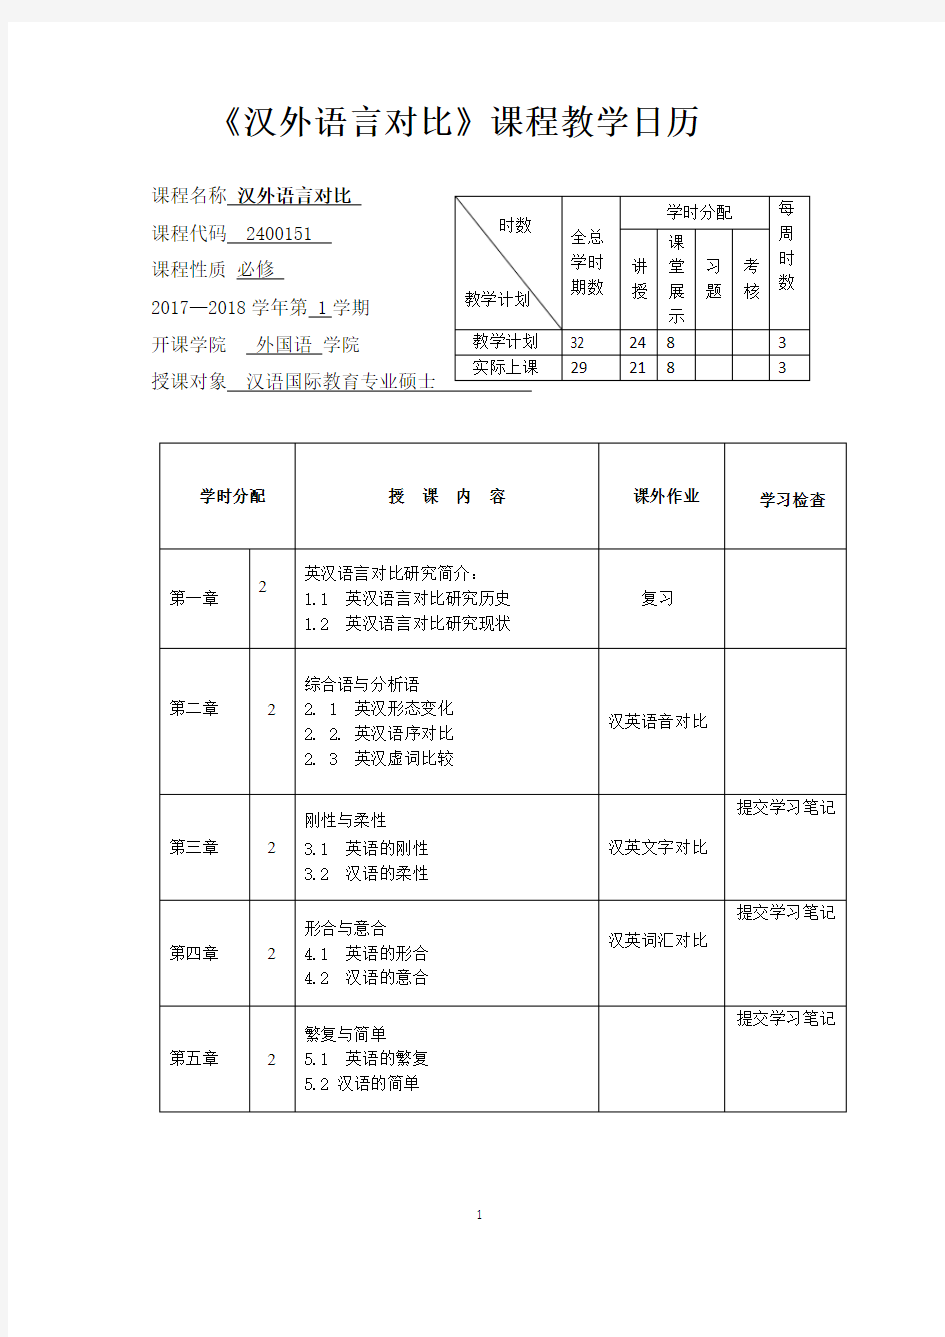 《汉外语言对比》课程教学日历